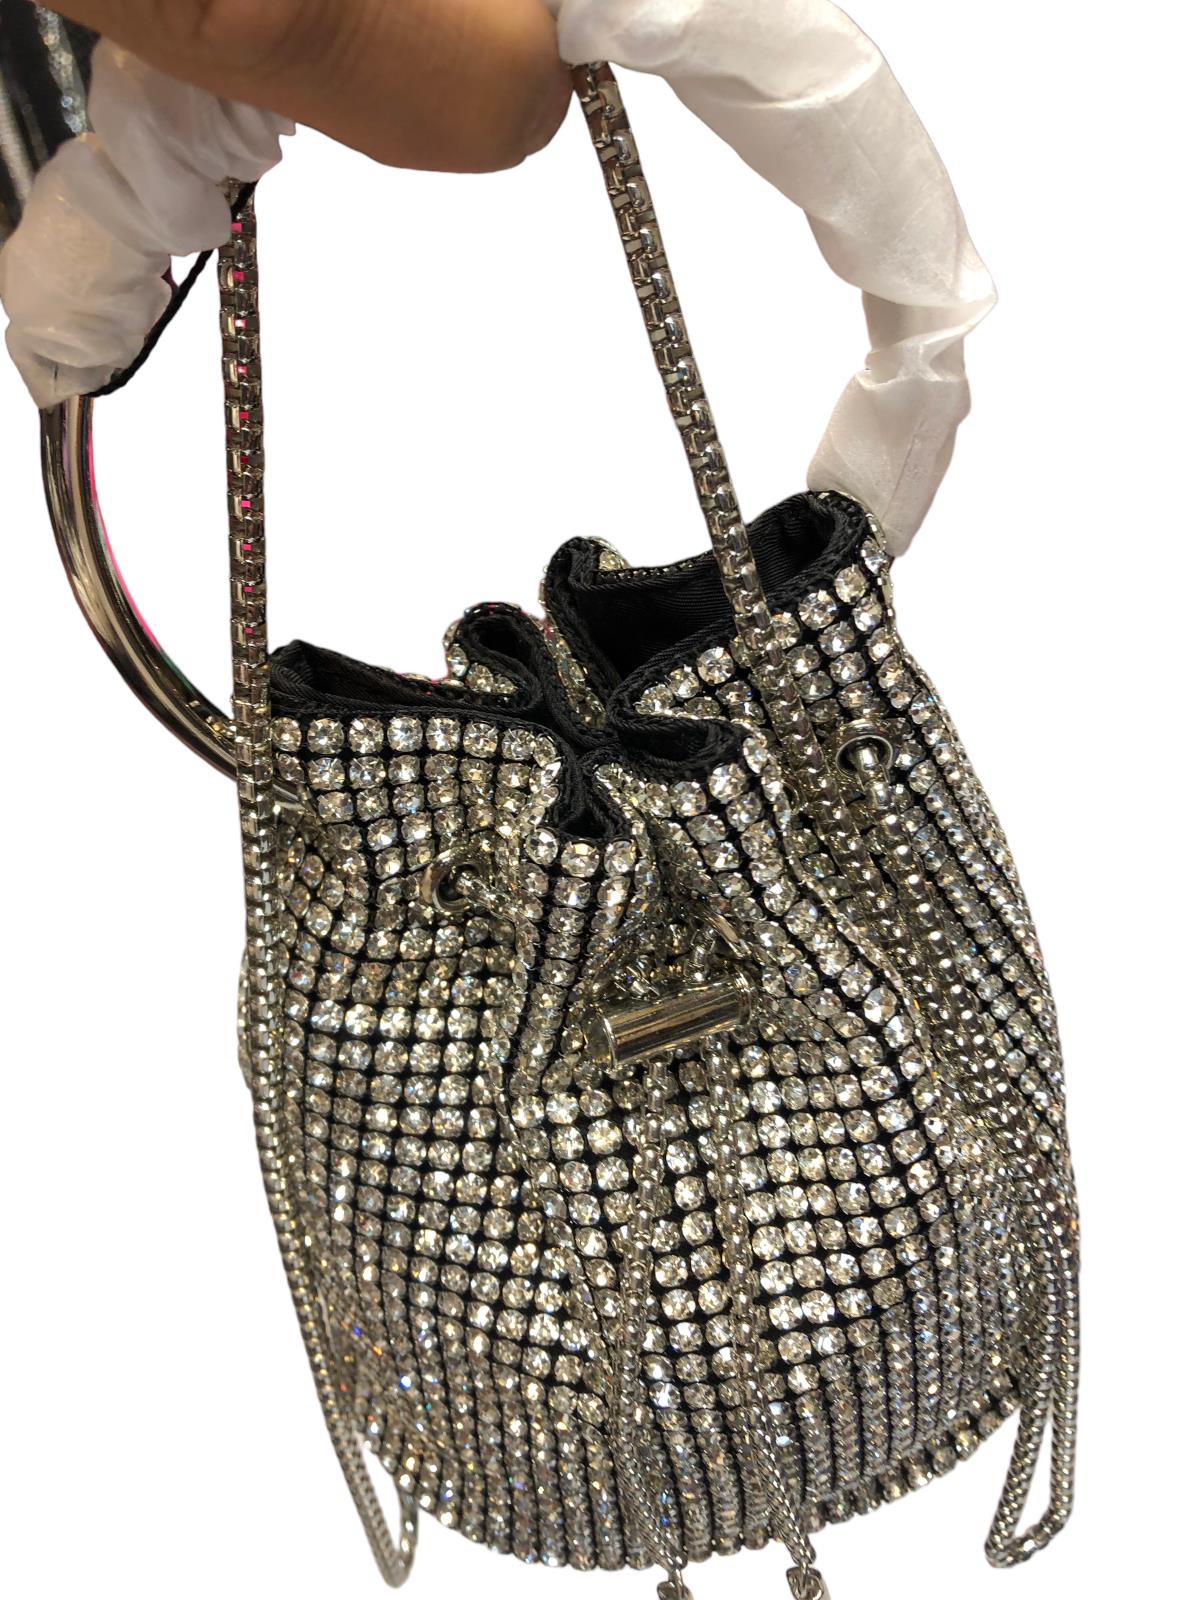 Siyah Taşlı abiye ve gece çantası 20cm17 |elizabell.com.tr